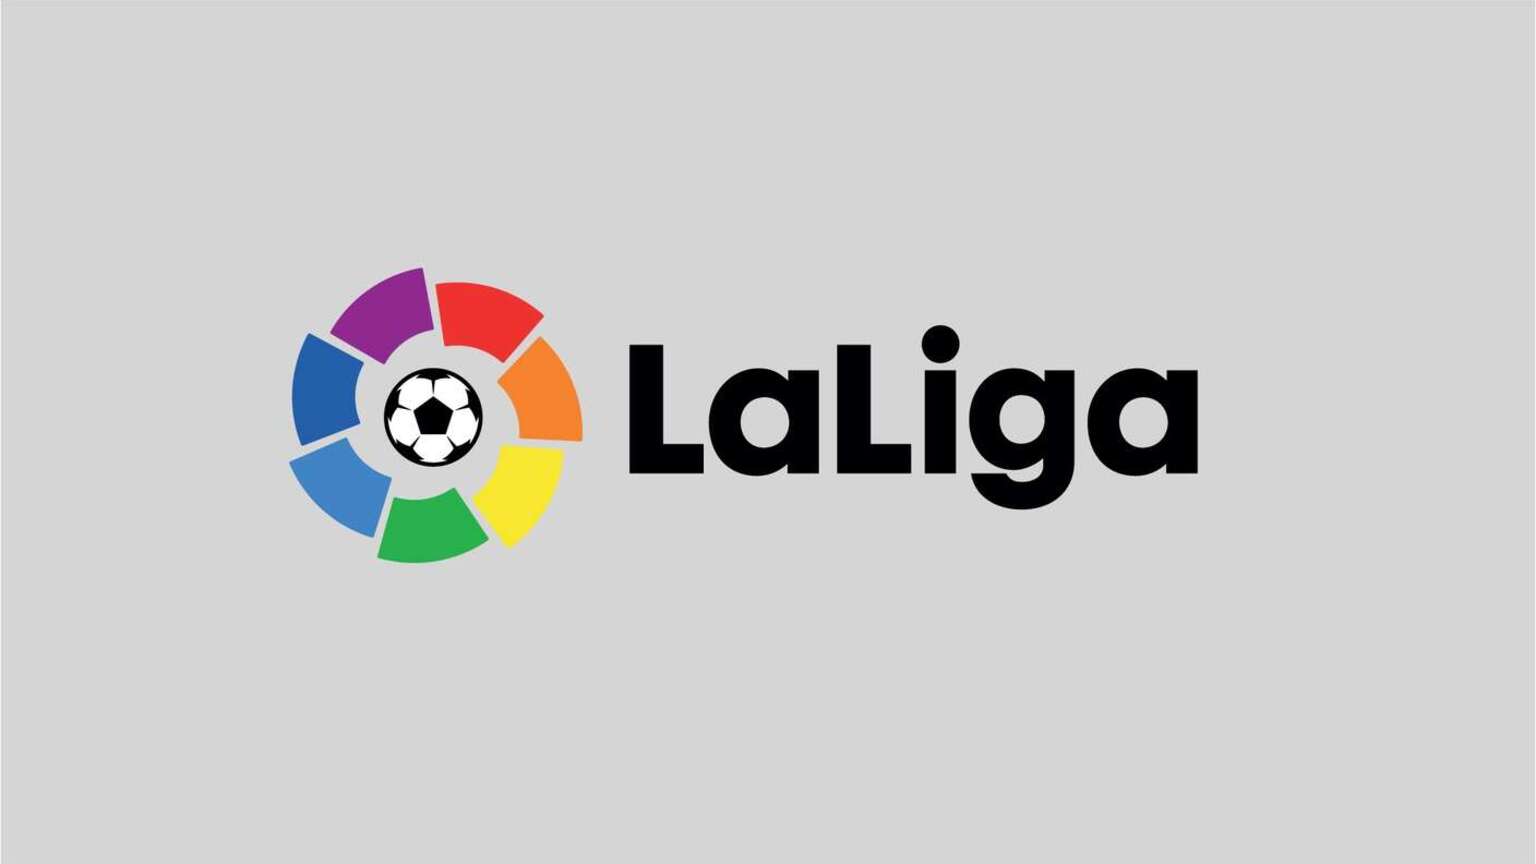 LaLiga de España puede estar planeando lanzar su servicio de transmisión en vivo en Europa - The Streamable